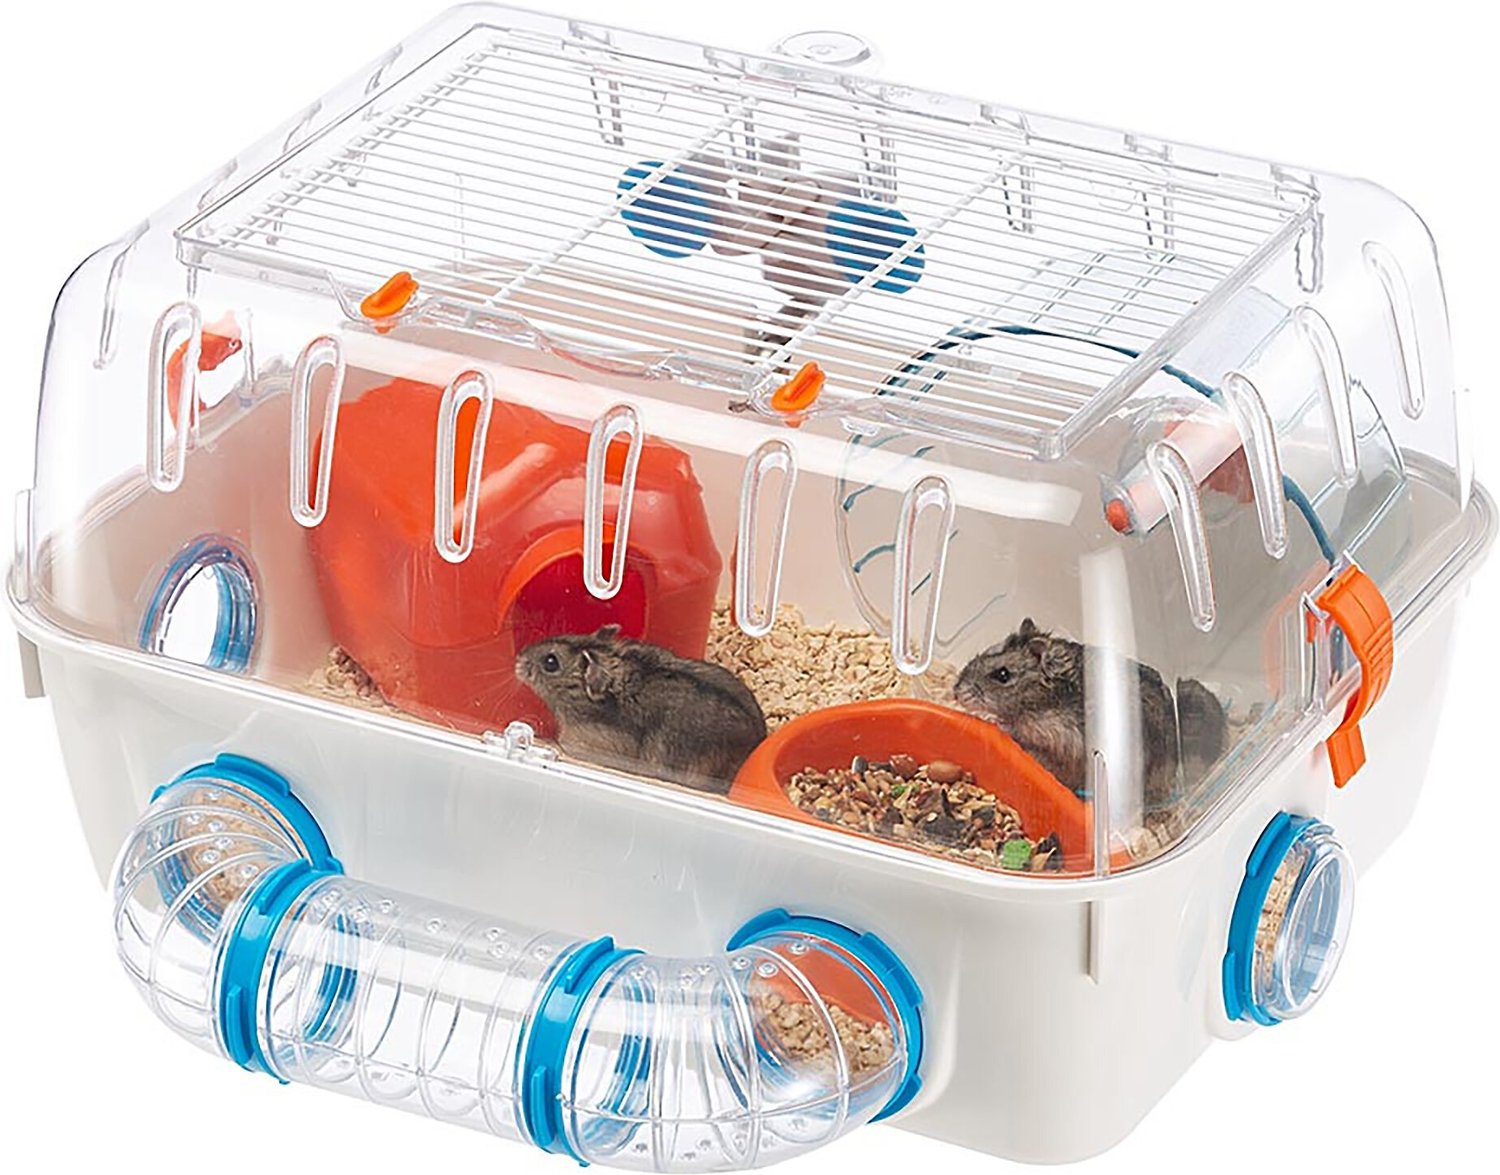 achterstalligheid gelei Betrouwbaar FERPLAST Combi 1 Starter Hamster Cage - Chewy.com